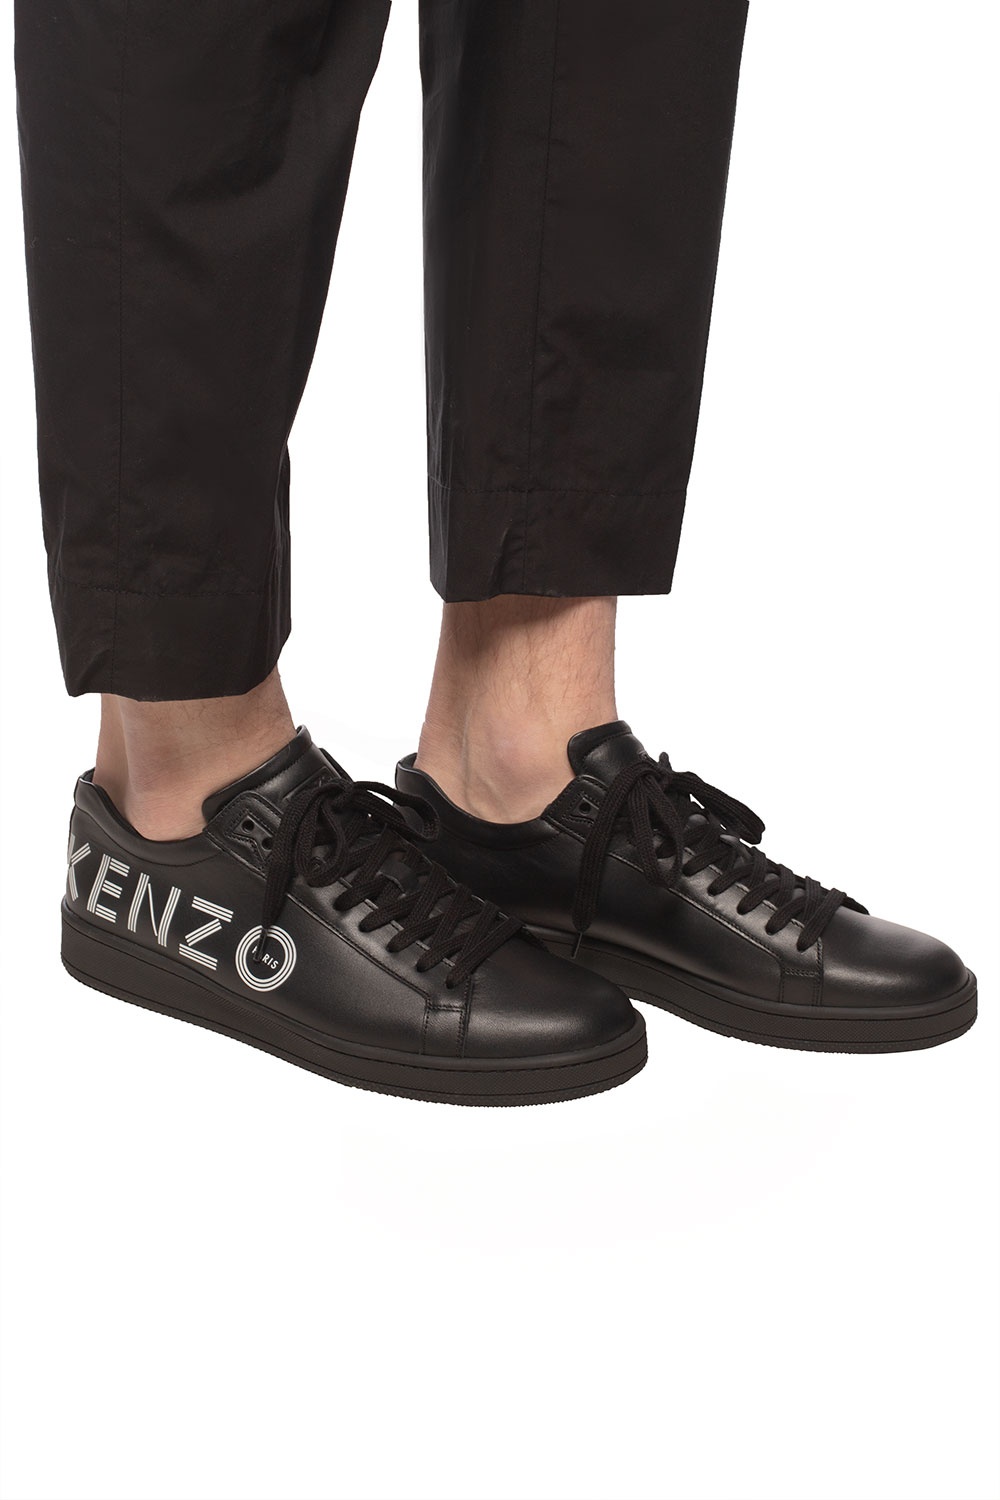 kenzo sneakers black